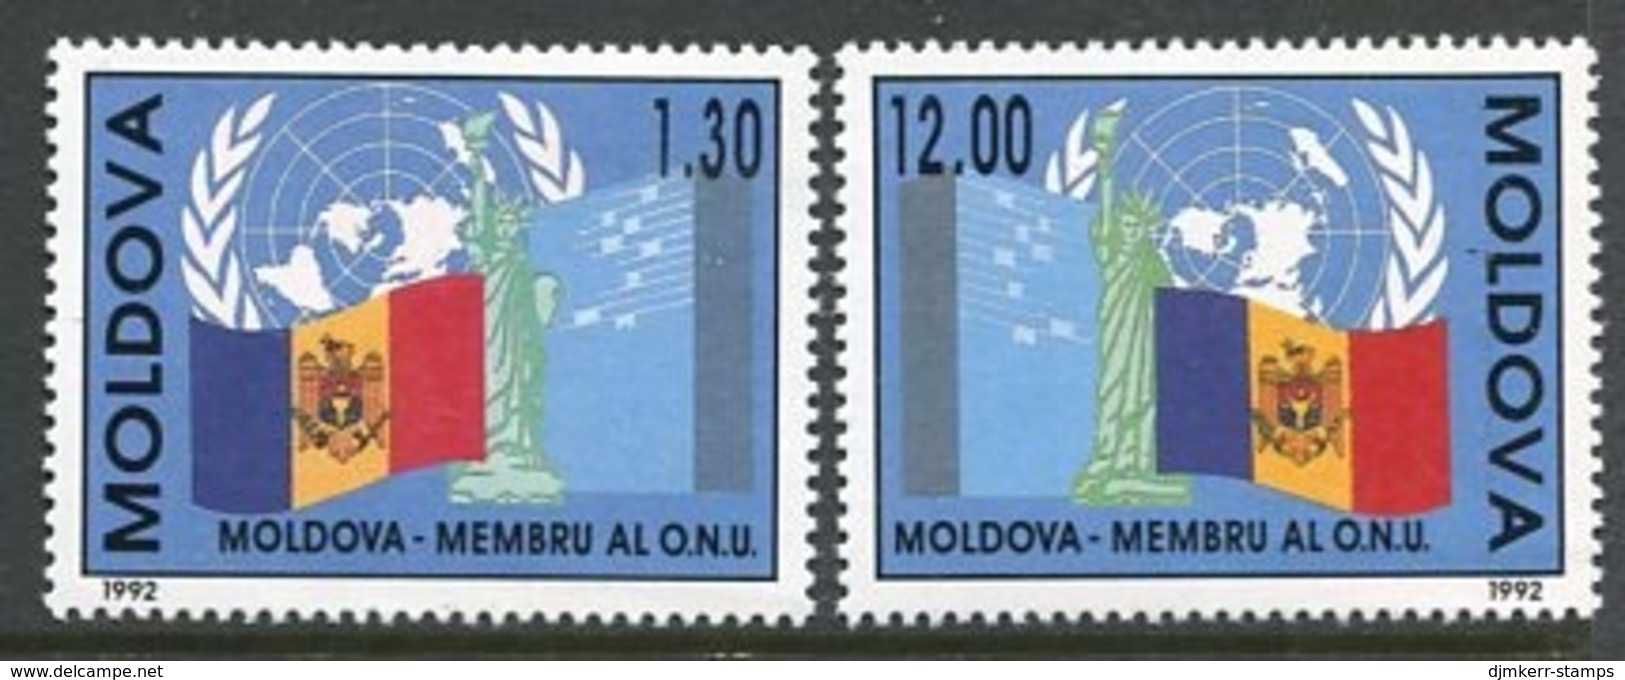 MOLDOVA 1992 Entry Into UNO MNH / **.  Michel 39-40 - Moldova